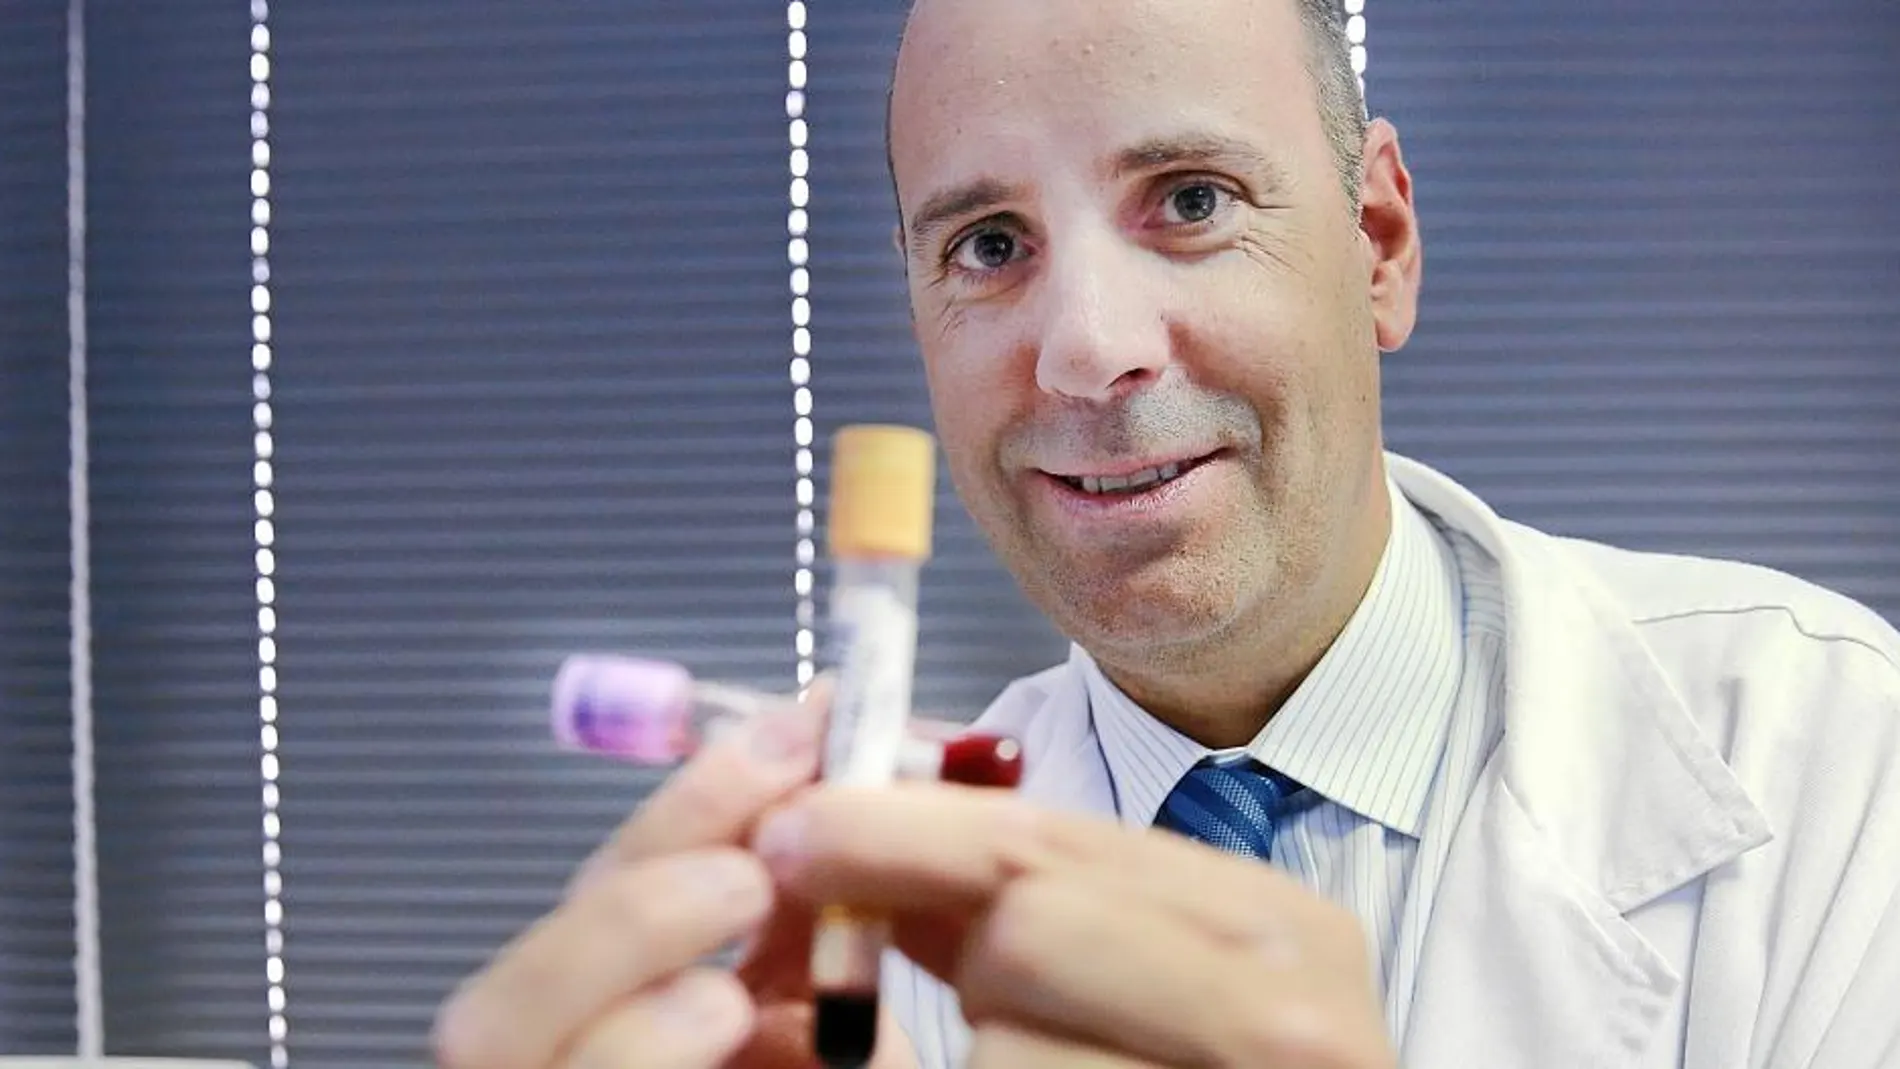 El oncólogo Javier Cortés con dos de las muestras con las que trabaja